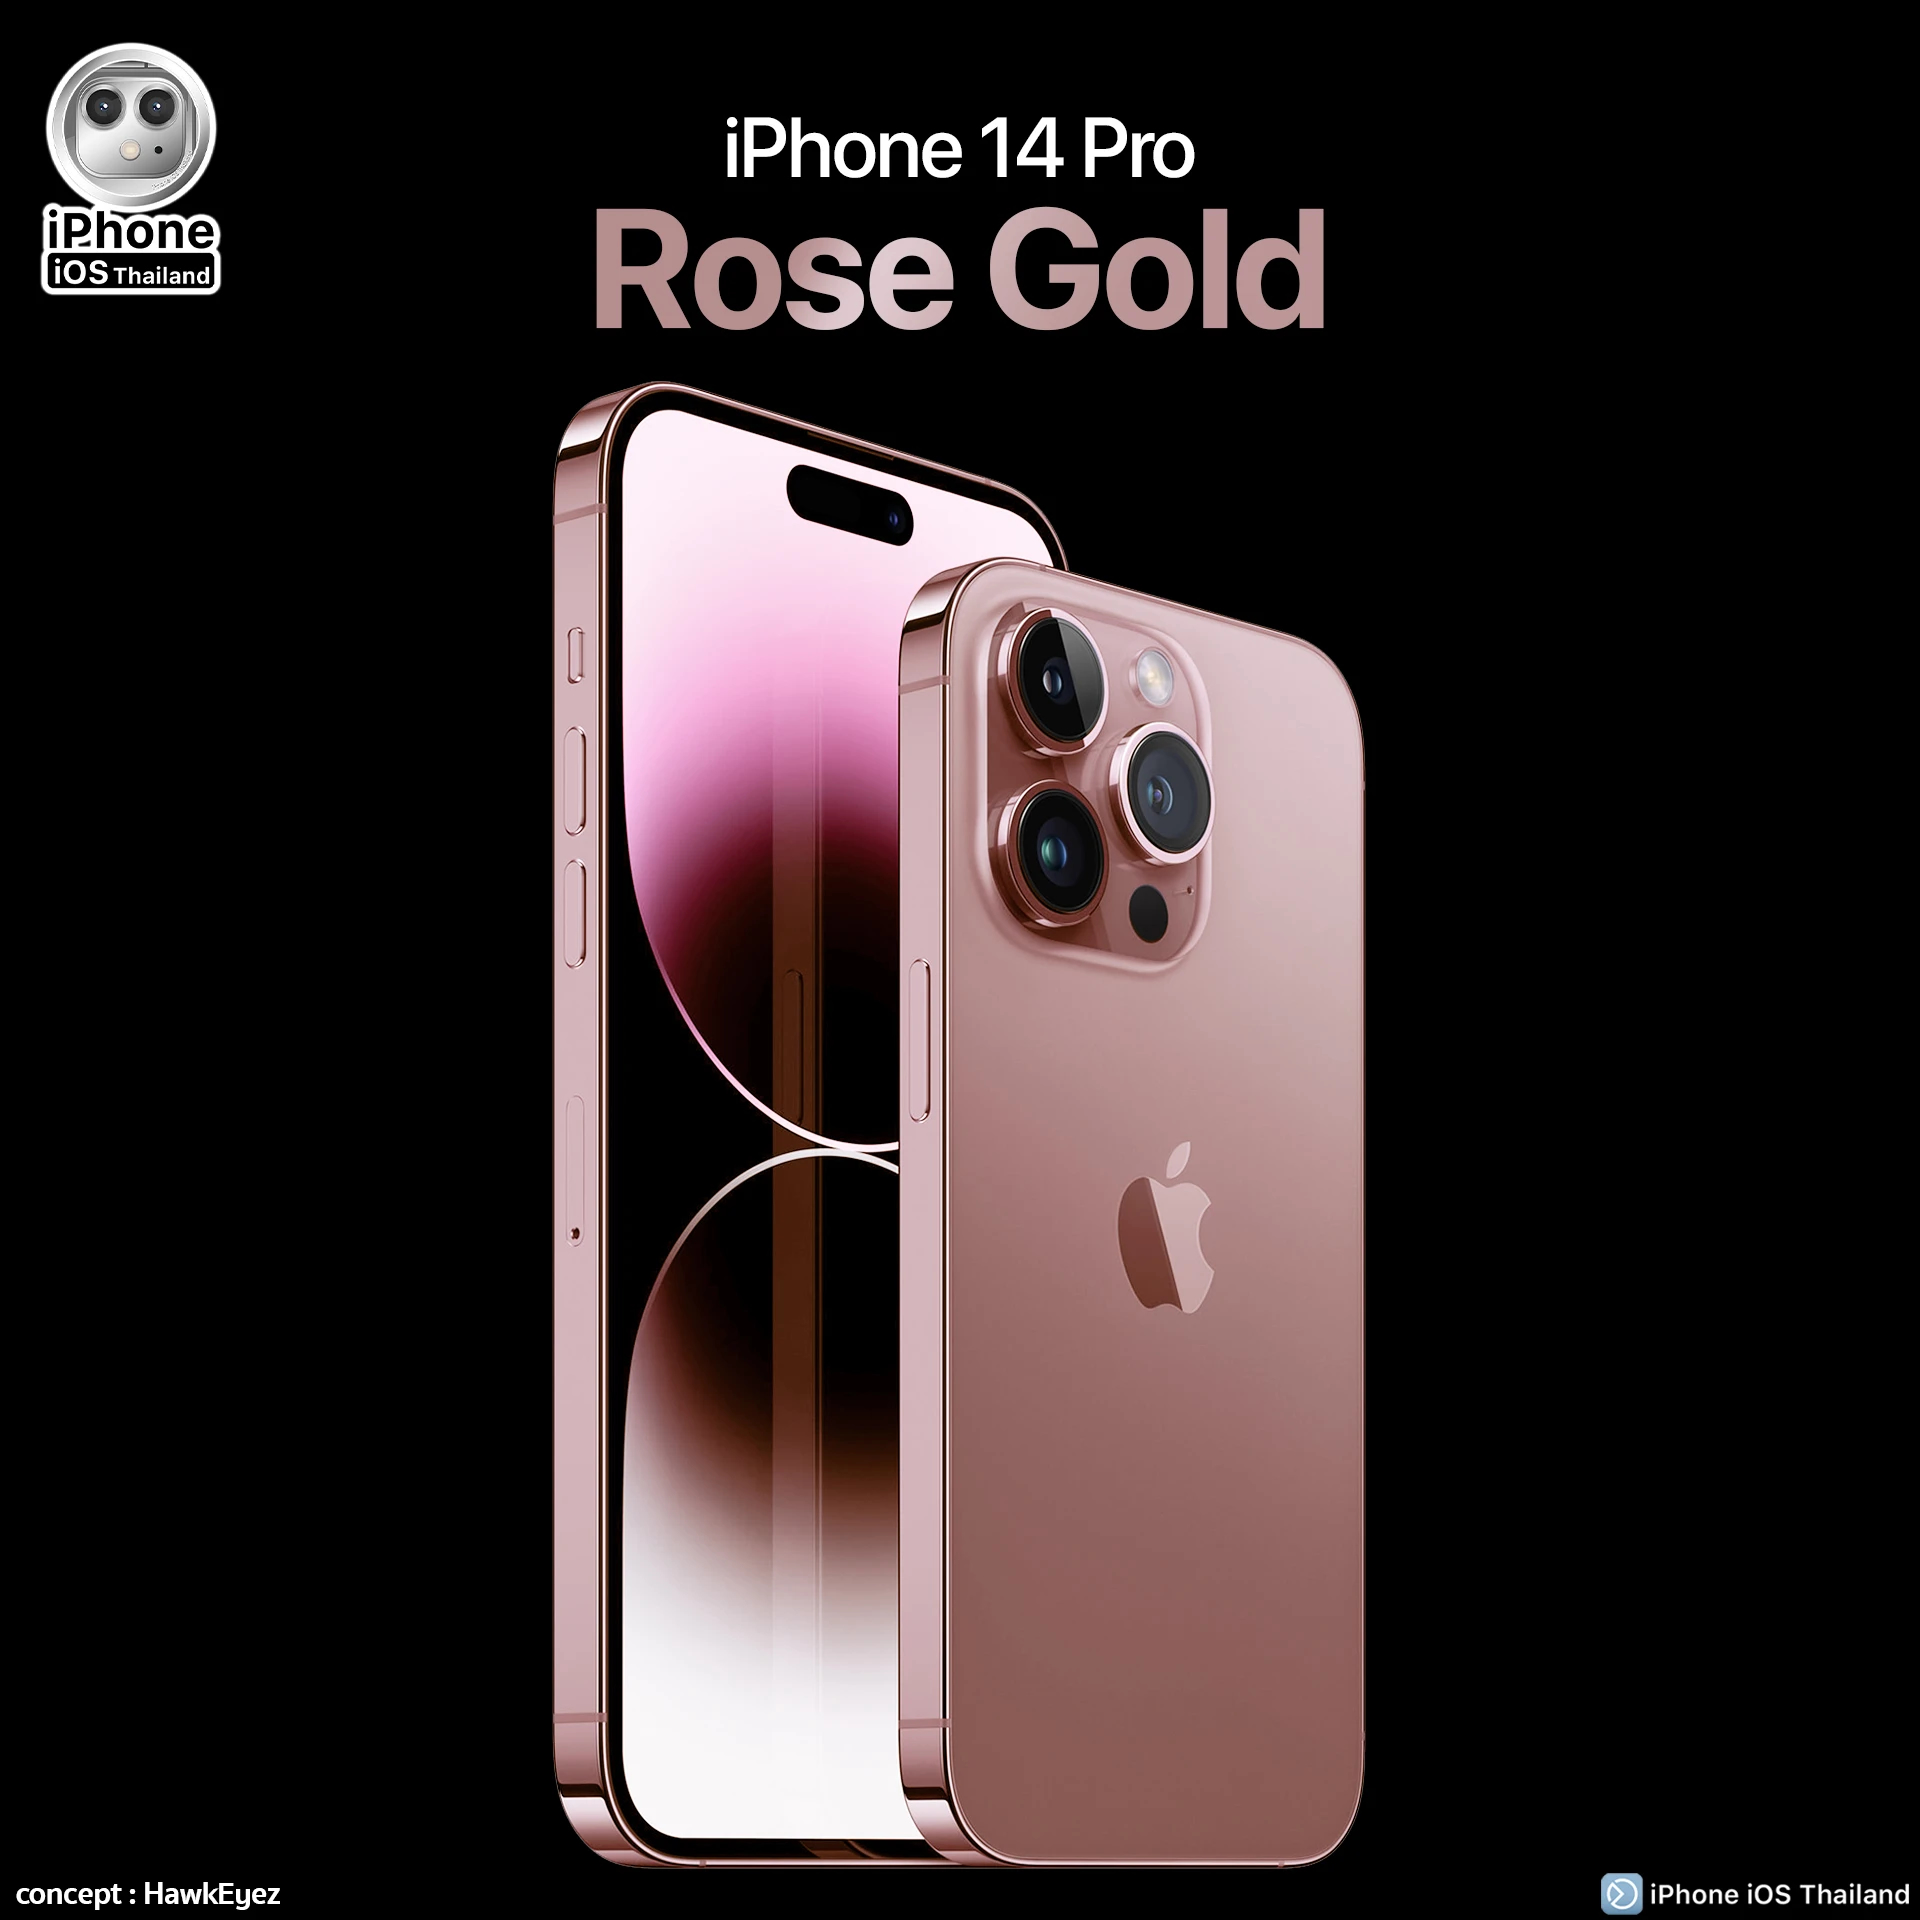 iPhone 14 Pro phiên bản hồng đầy phong cách và hiện đại là điều mà bạn không thể bỏ lỡ. Bạn sẽ ấn tượng với thiết kế tinh tế và chất lượng cao cấp của iPhone 14 Pro phiên bản hồng.